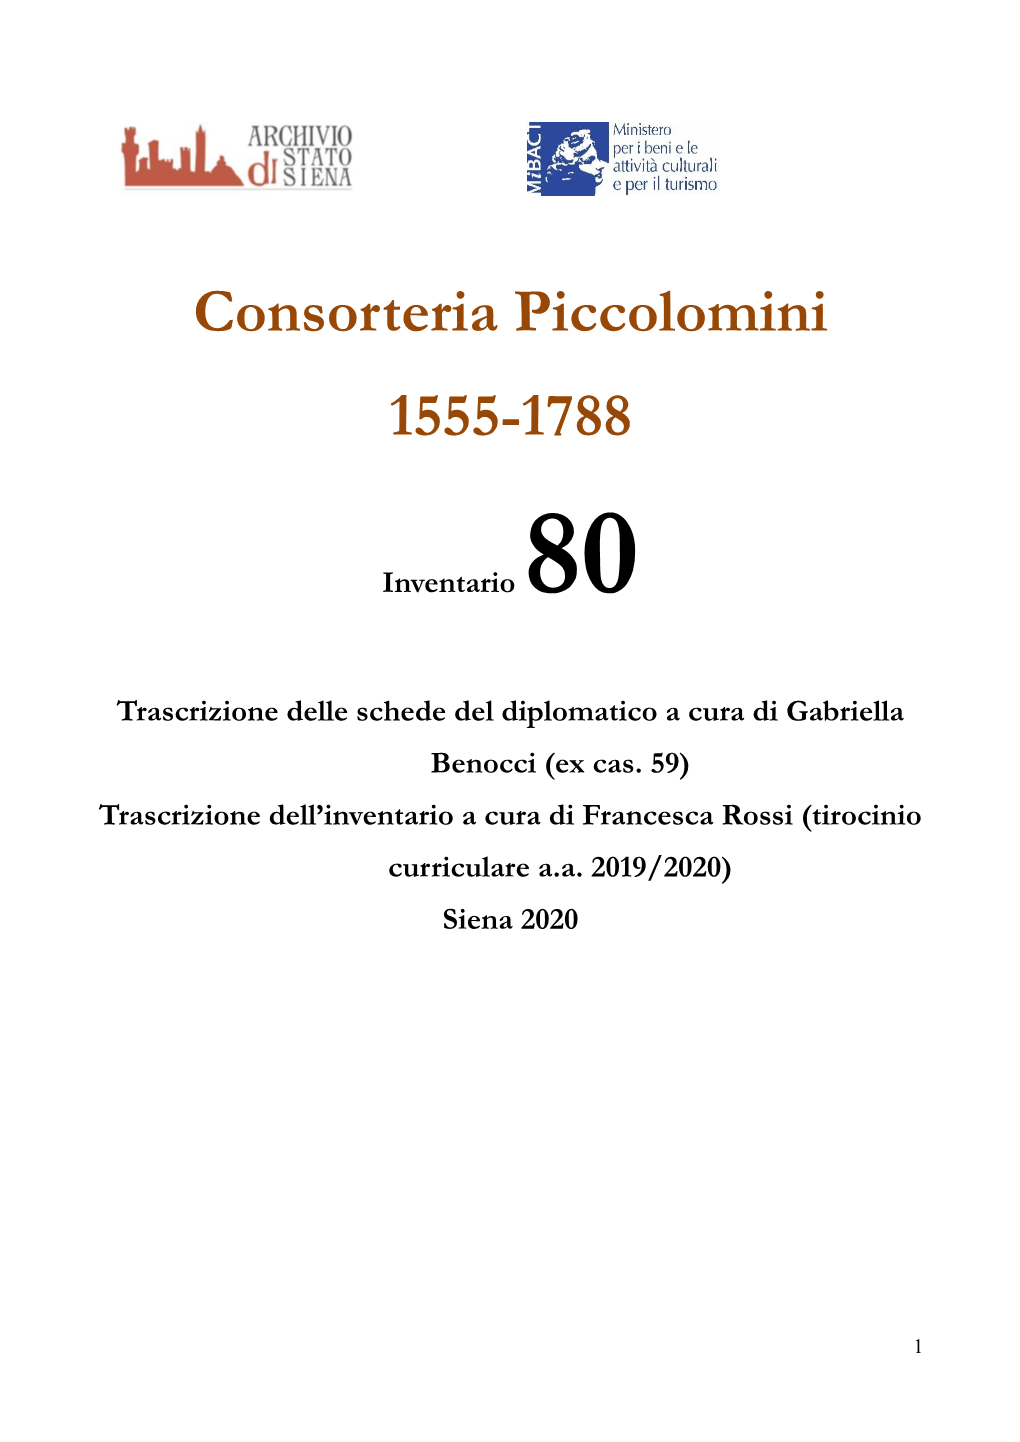 Consorteria Piccolomini 1555-1788